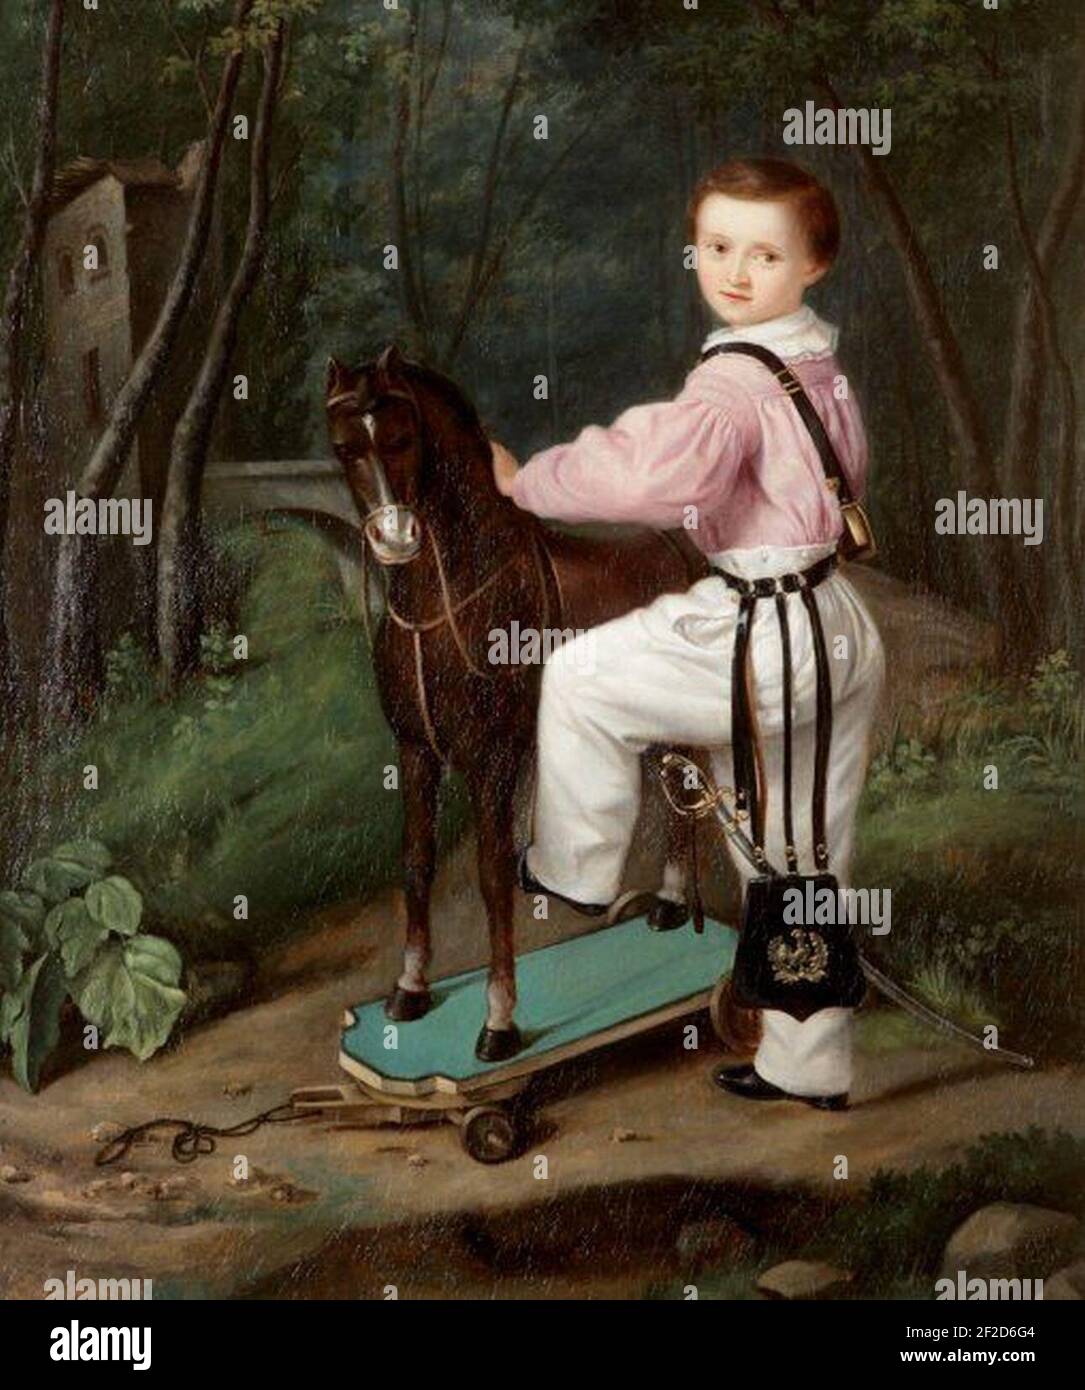 Portrait of a Child with a Toy Horse - Estelle de Barescut Stock Photo -  Alamy